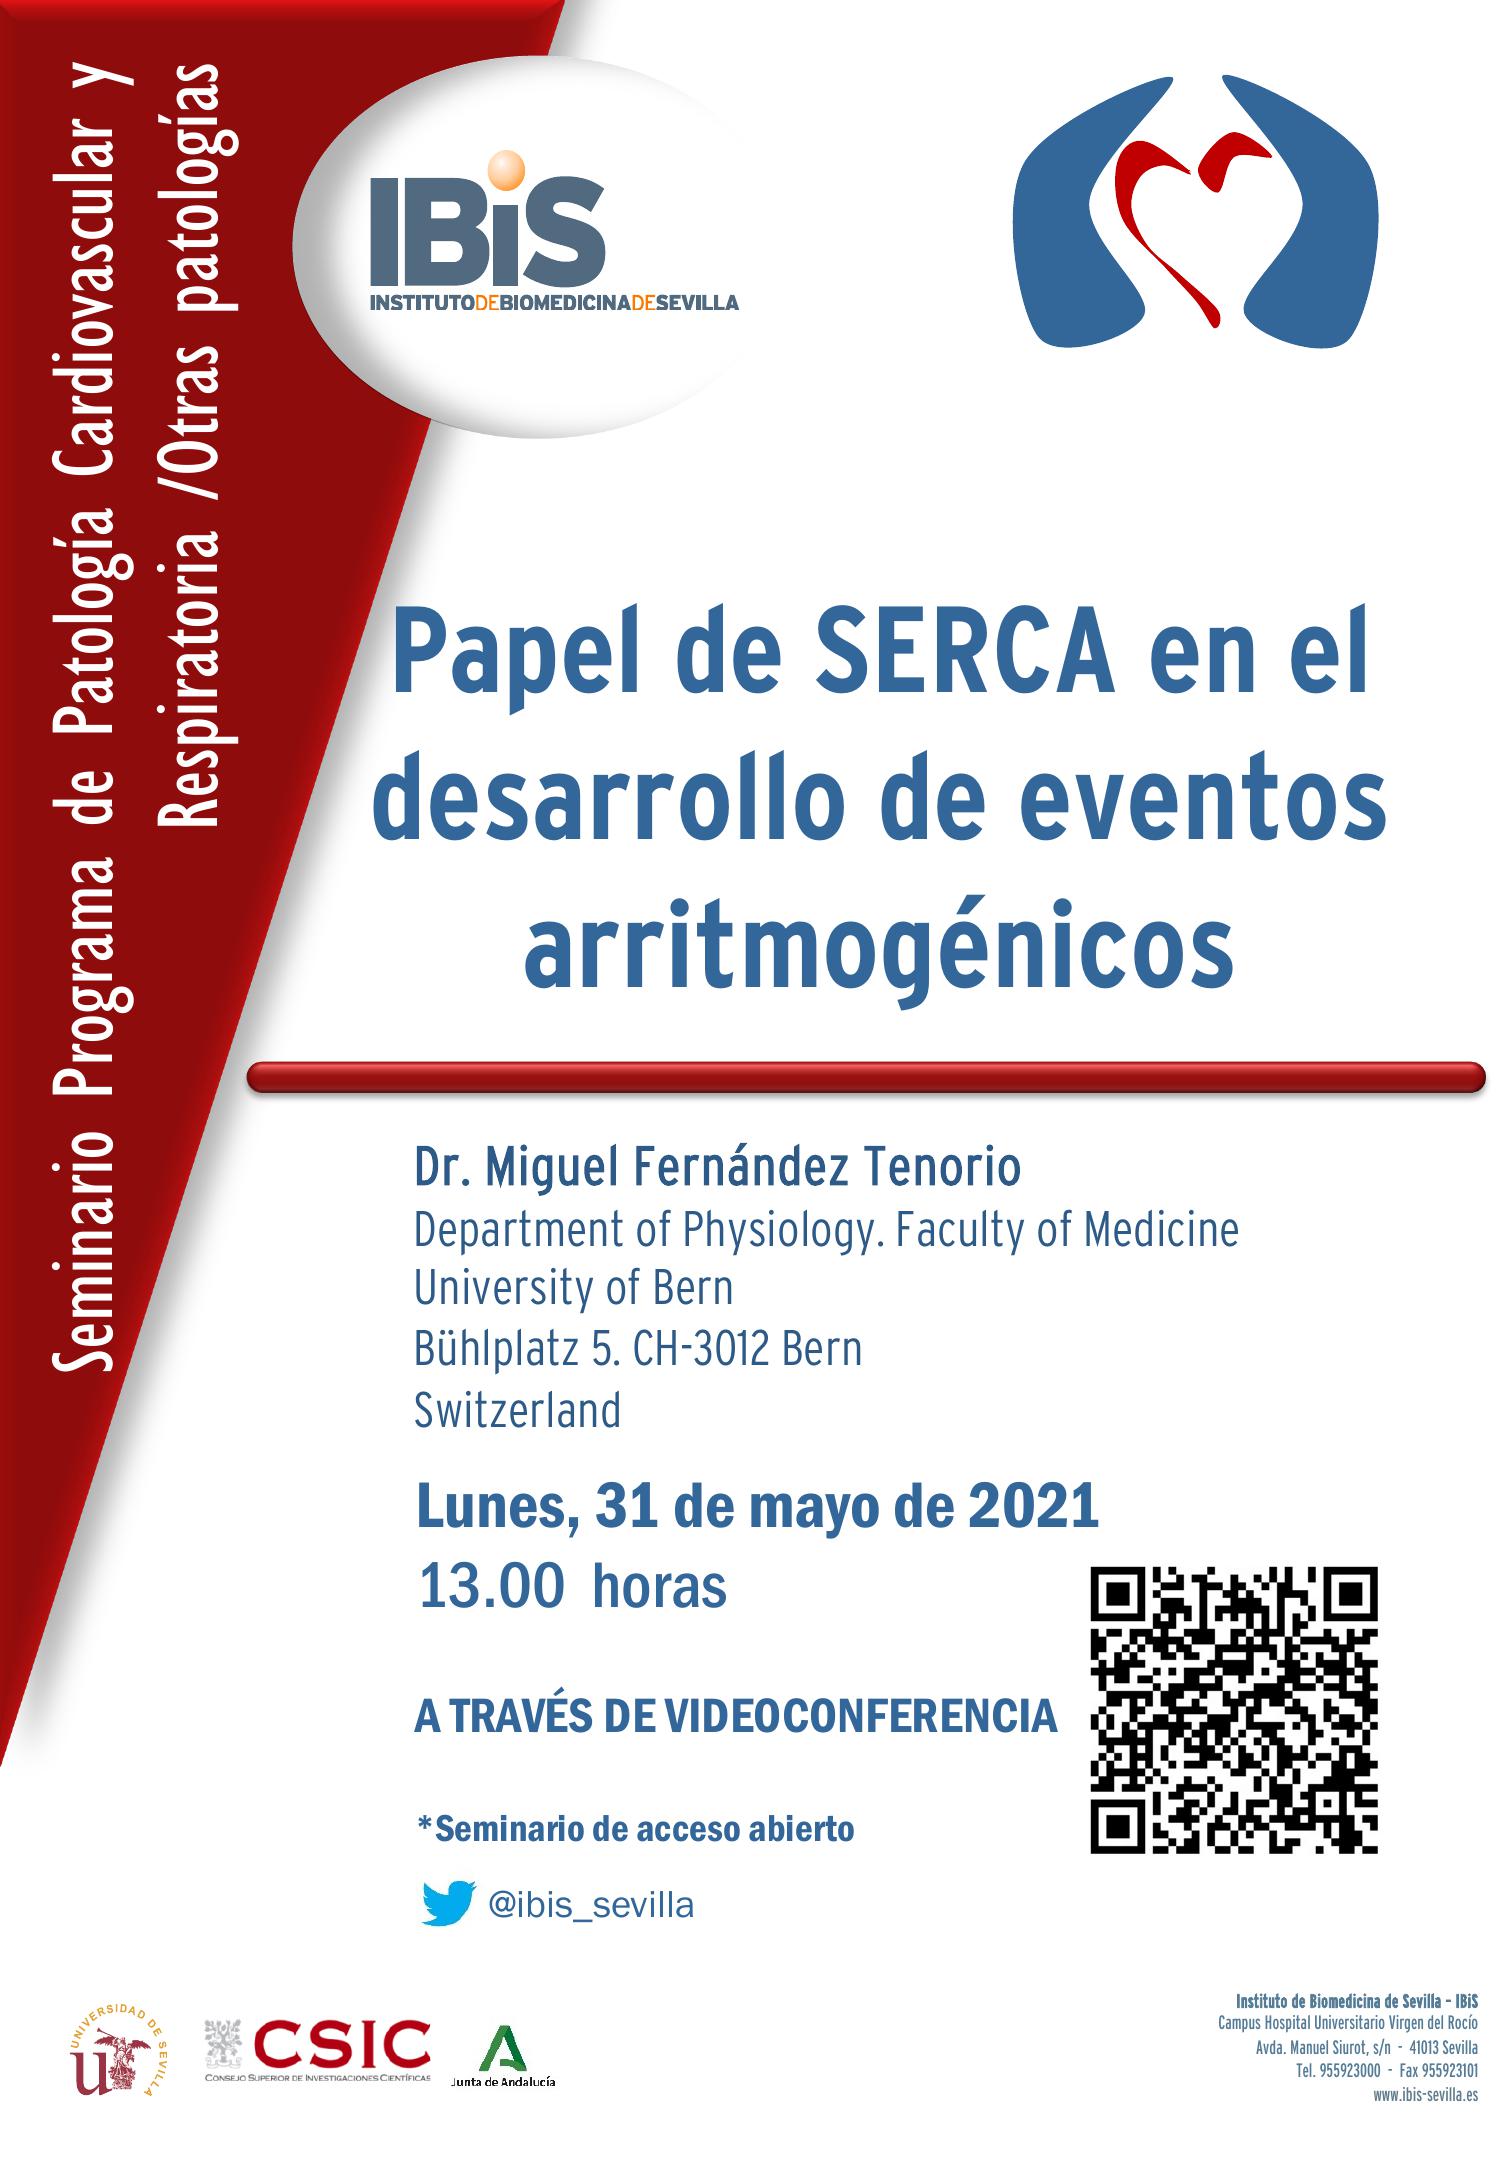 Poster: Papel de SERCA en el desarrollo de eventos arritmogénicos